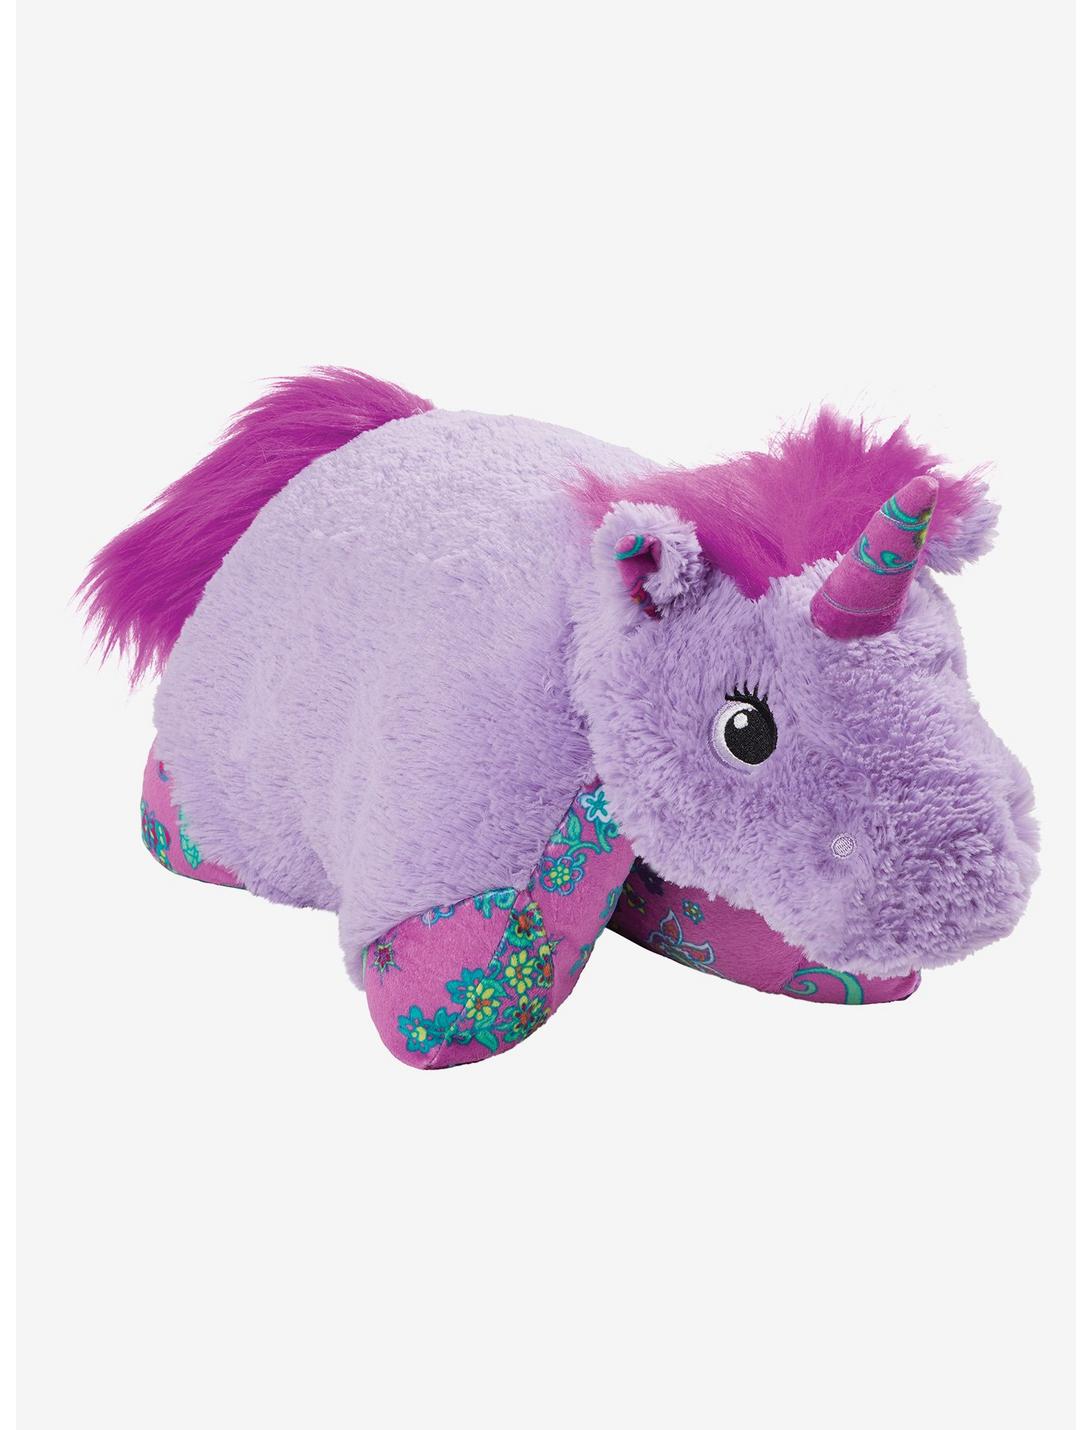 Colorful Lavender Unicorn Pillow Pets Plush Toy, , hi-res